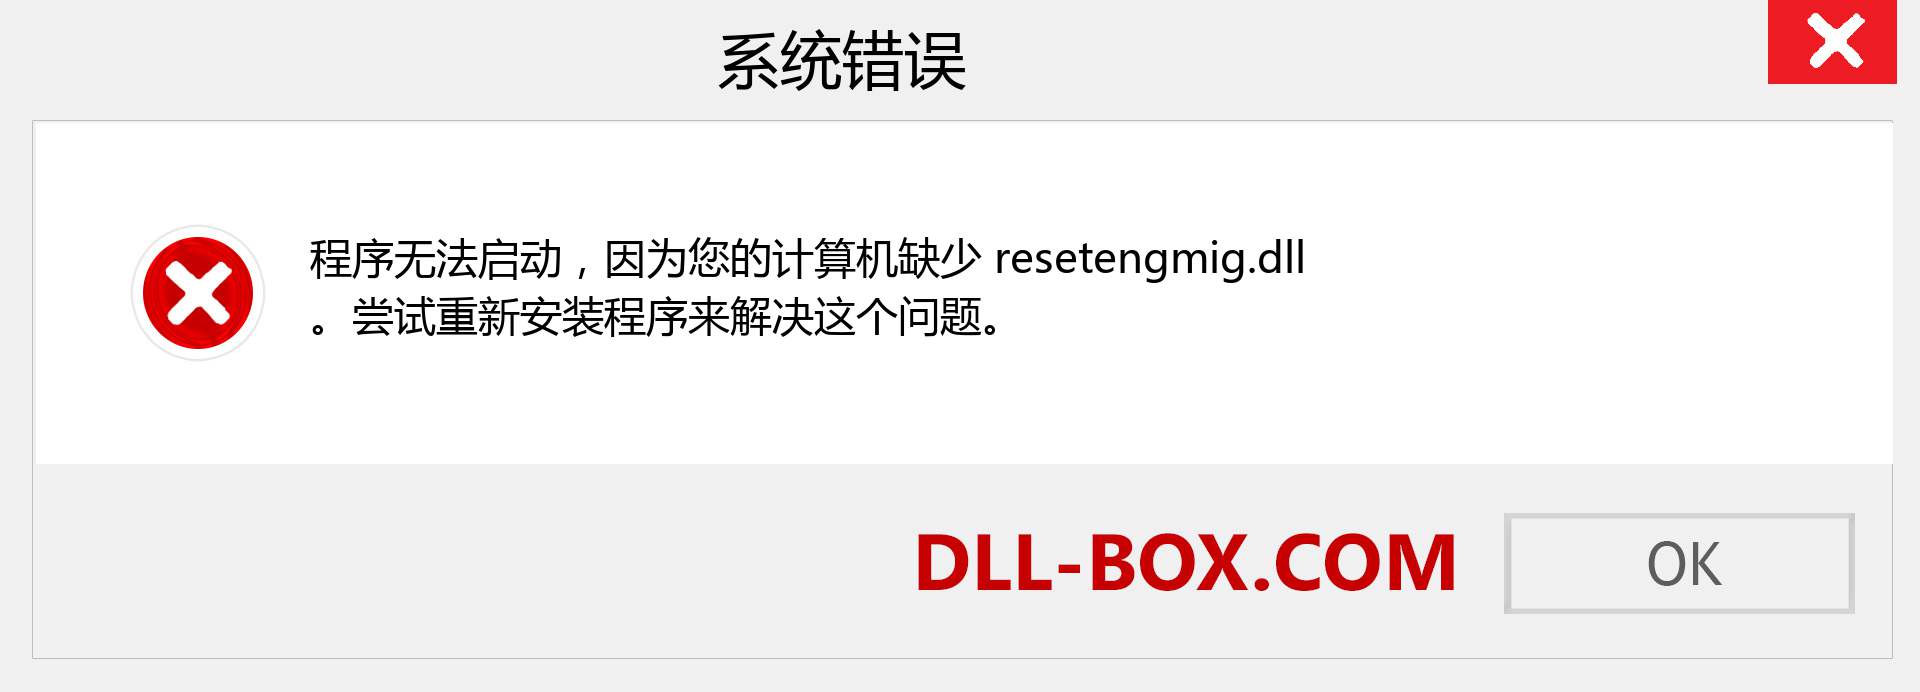 resetengmig.dll 文件丢失？。 适用于 Windows 7、8、10 的下载 - 修复 Windows、照片、图像上的 resetengmig dll 丢失错误